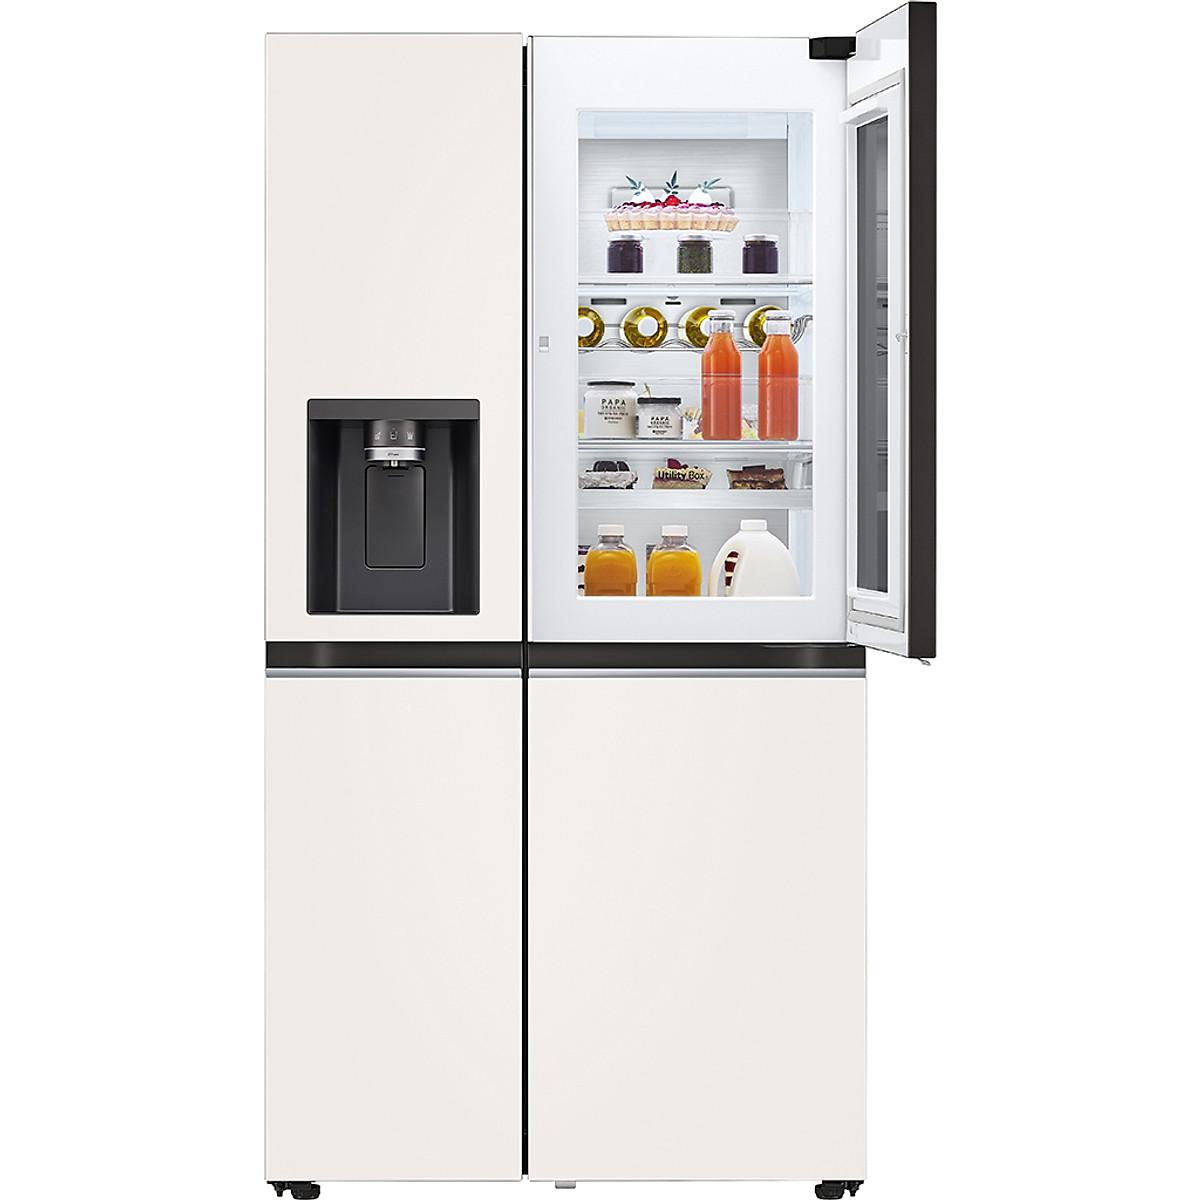 Tủ lạnh LG Inverter 635 lít GR-X257BG - Hàng Chính Hãng (Chỉ giao HCM)